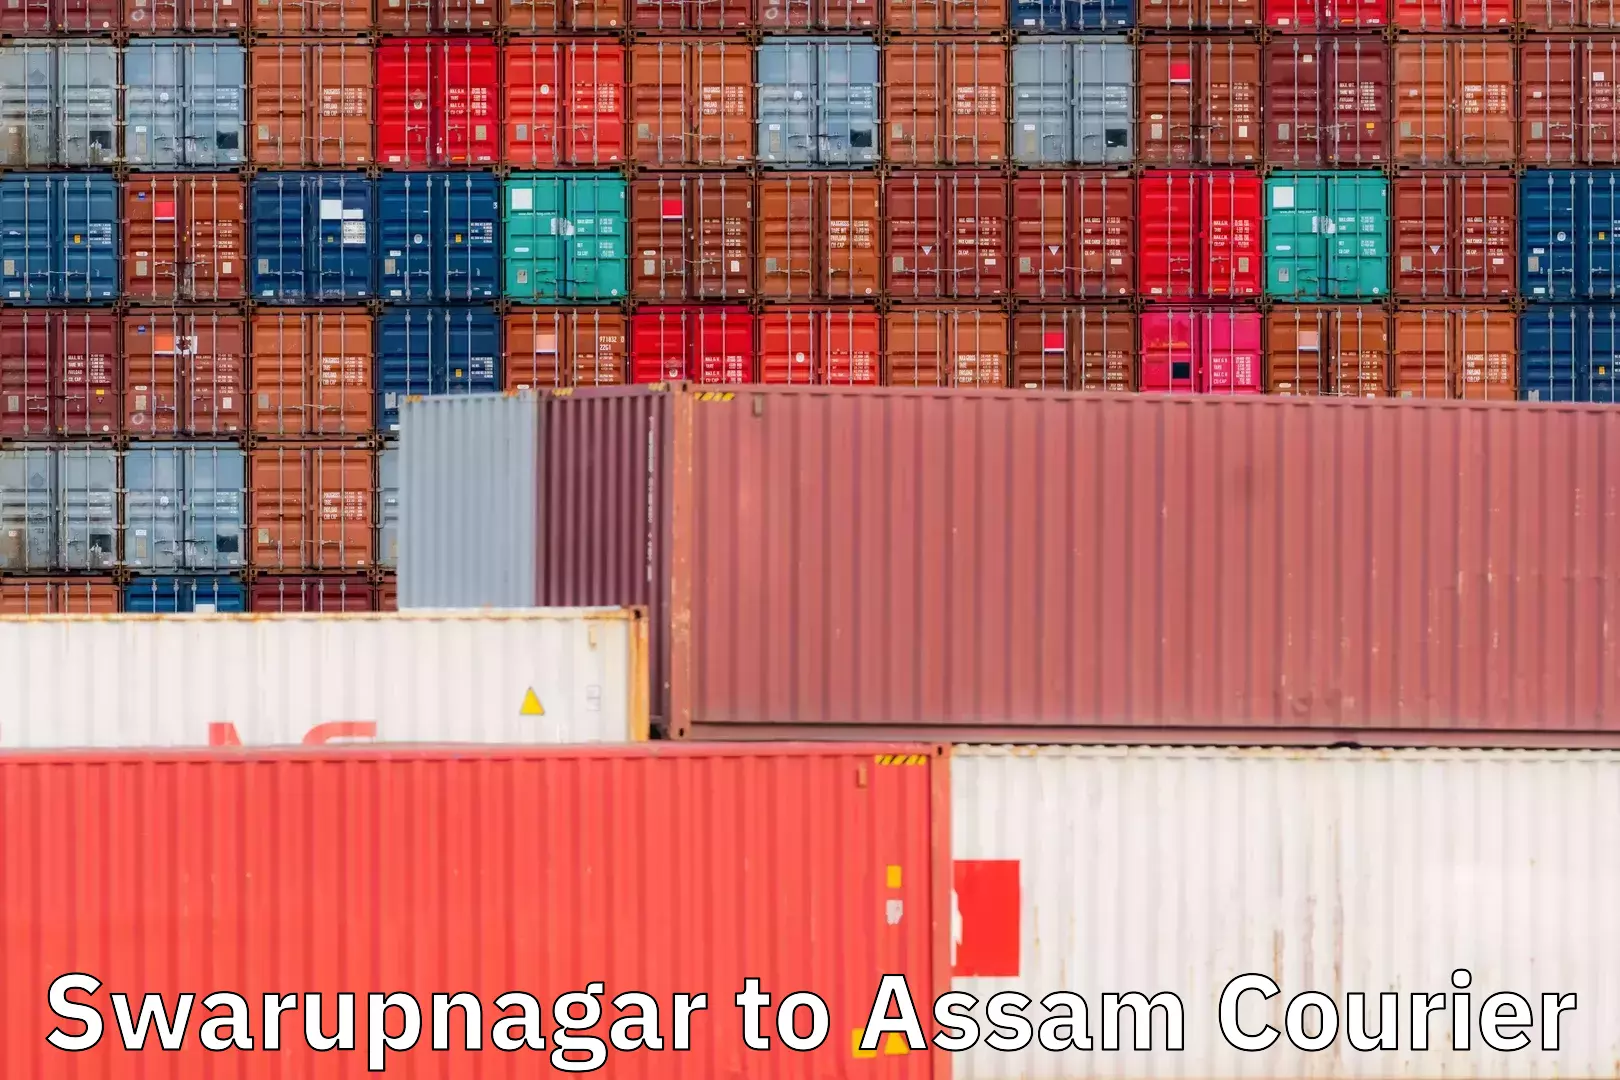 Courier service innovation Swarupnagar to Assam